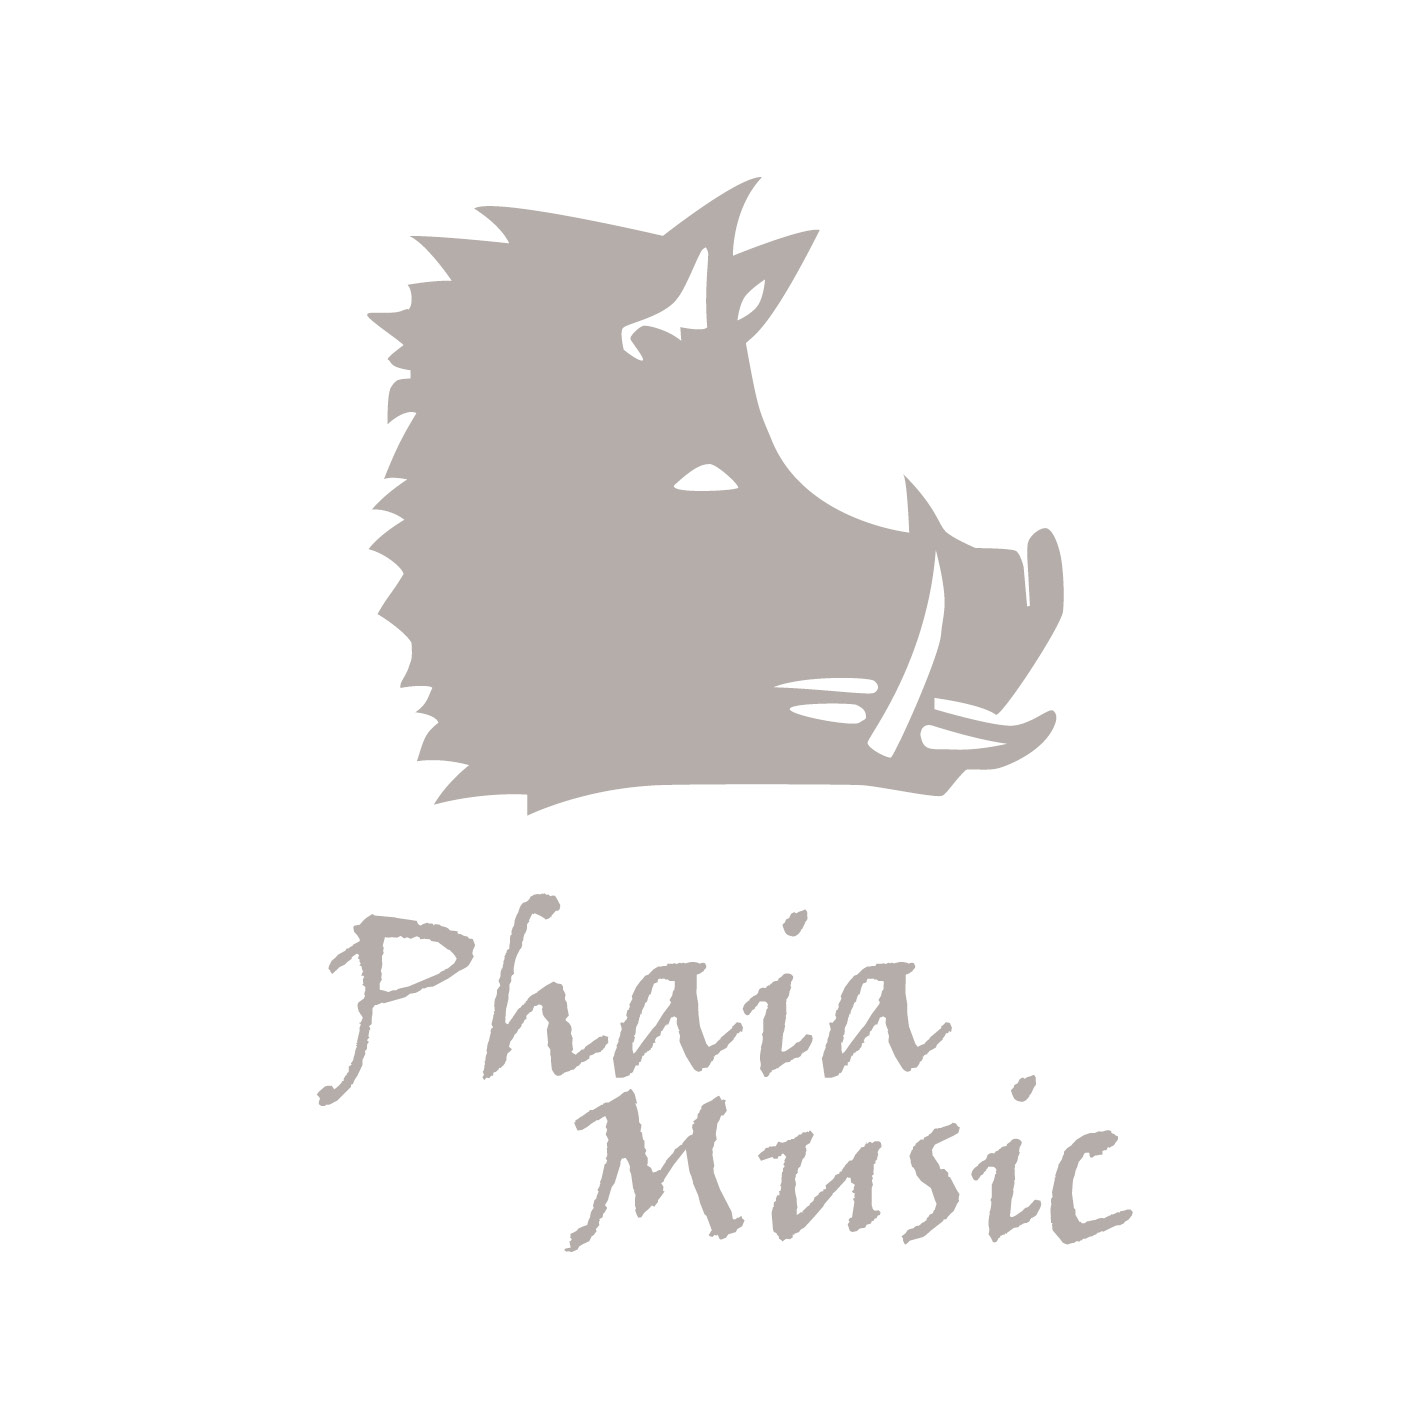 Phaia